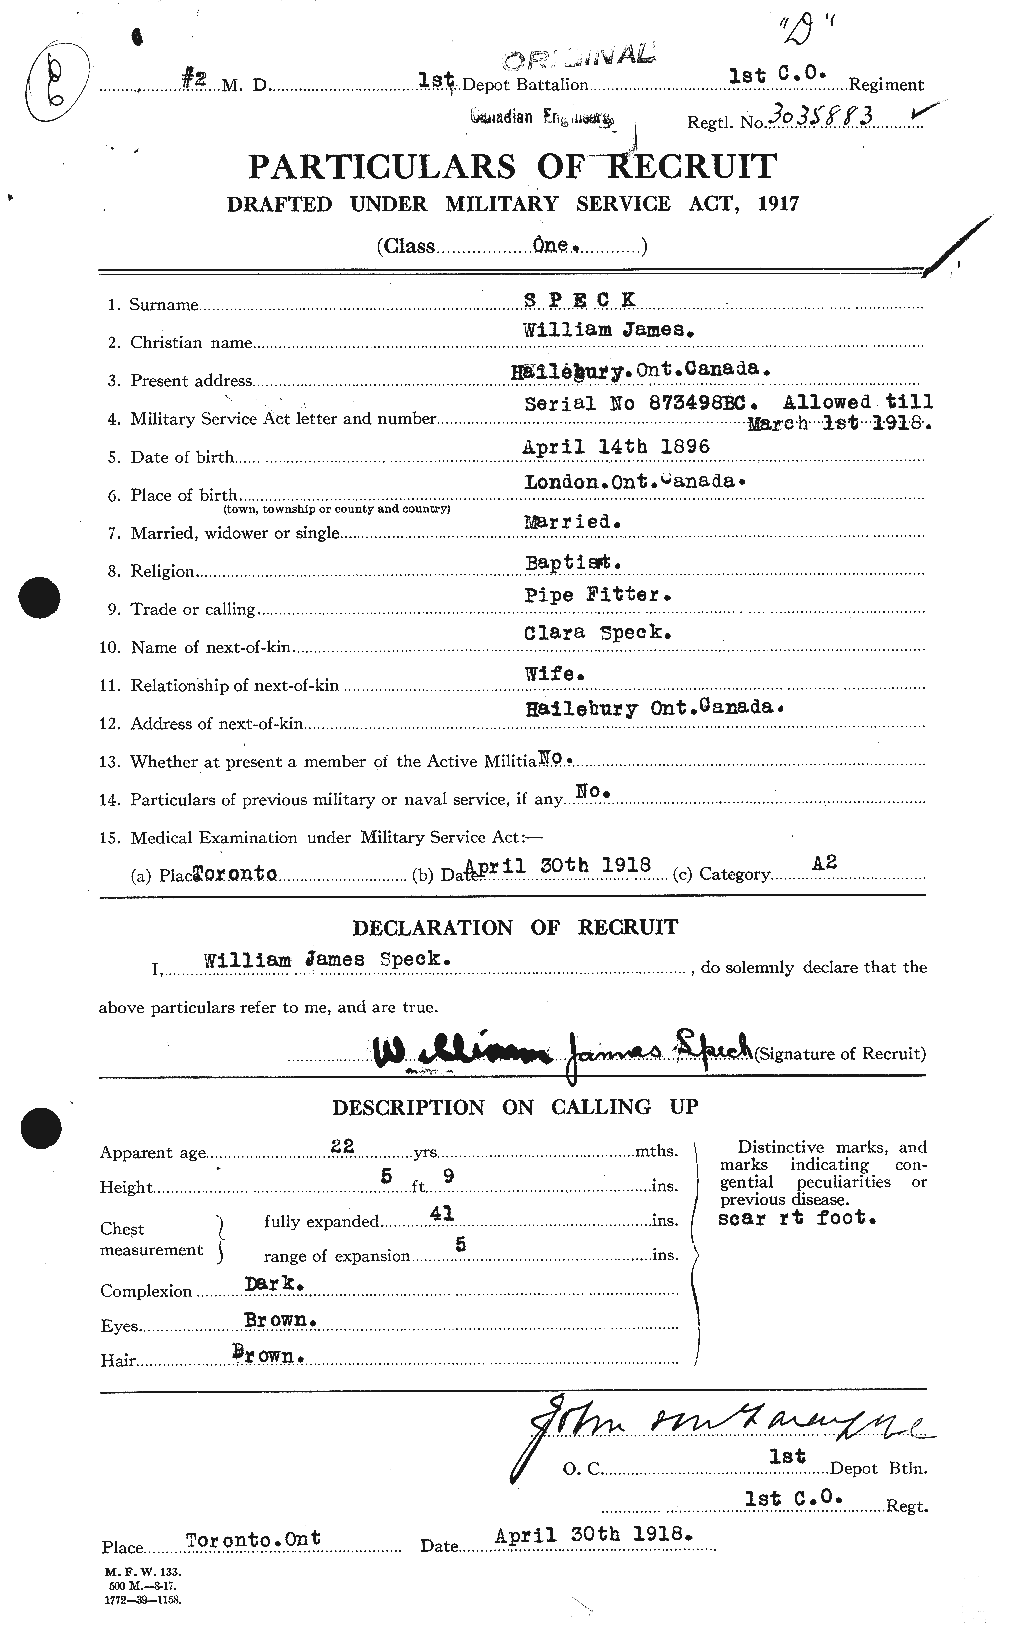 Dossiers du Personnel de la Première Guerre mondiale - CEC 110492a